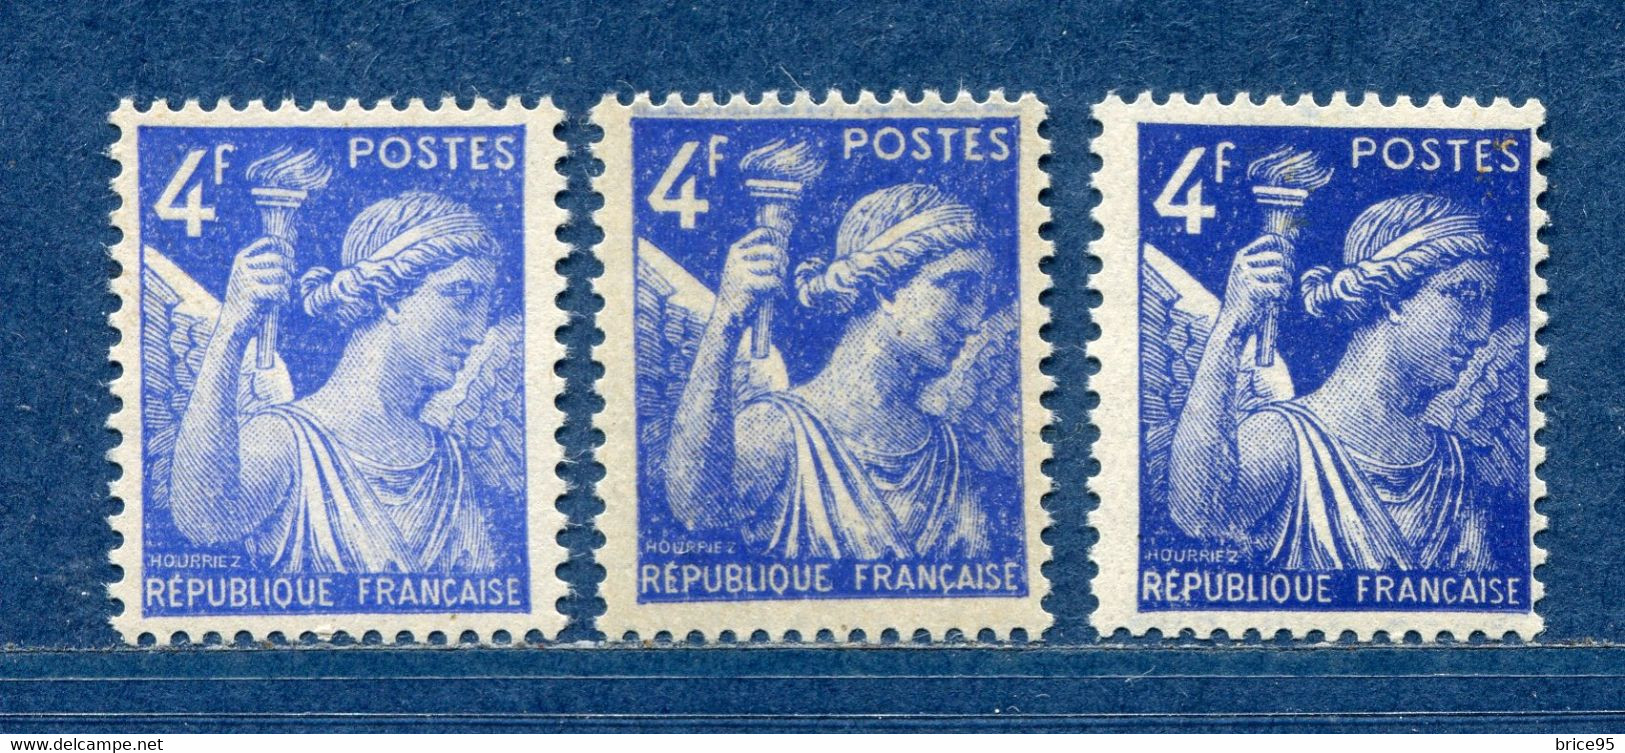 ⭐ France - Variété - YT N° 656 - Couleurs - Pétouilles - Neuf Sans Charnière - 1944 ⭐ - Unused Stamps